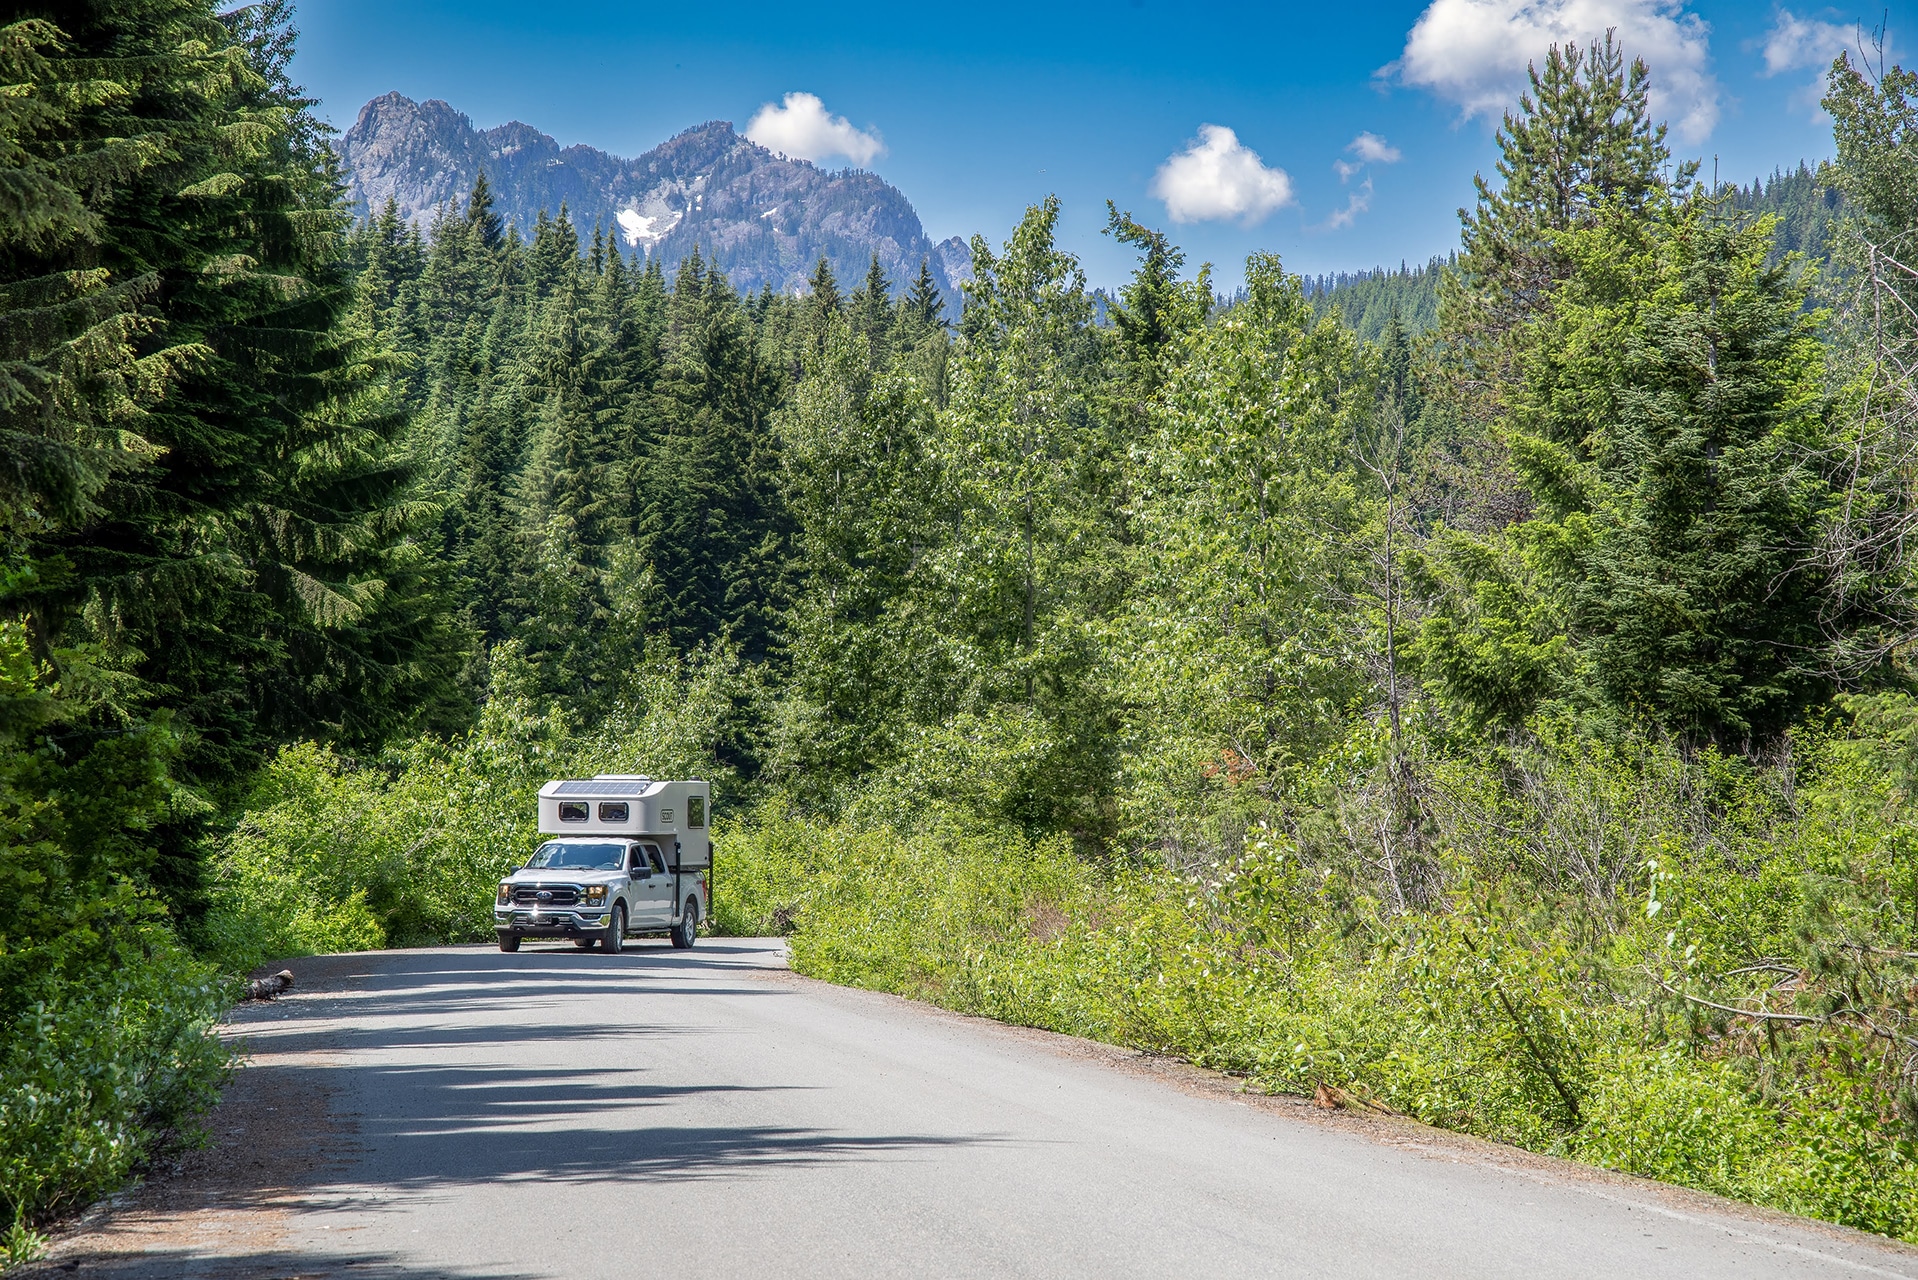 Scout Adventure Truck Camper 4x4 - GoNorth Car & RV Rental